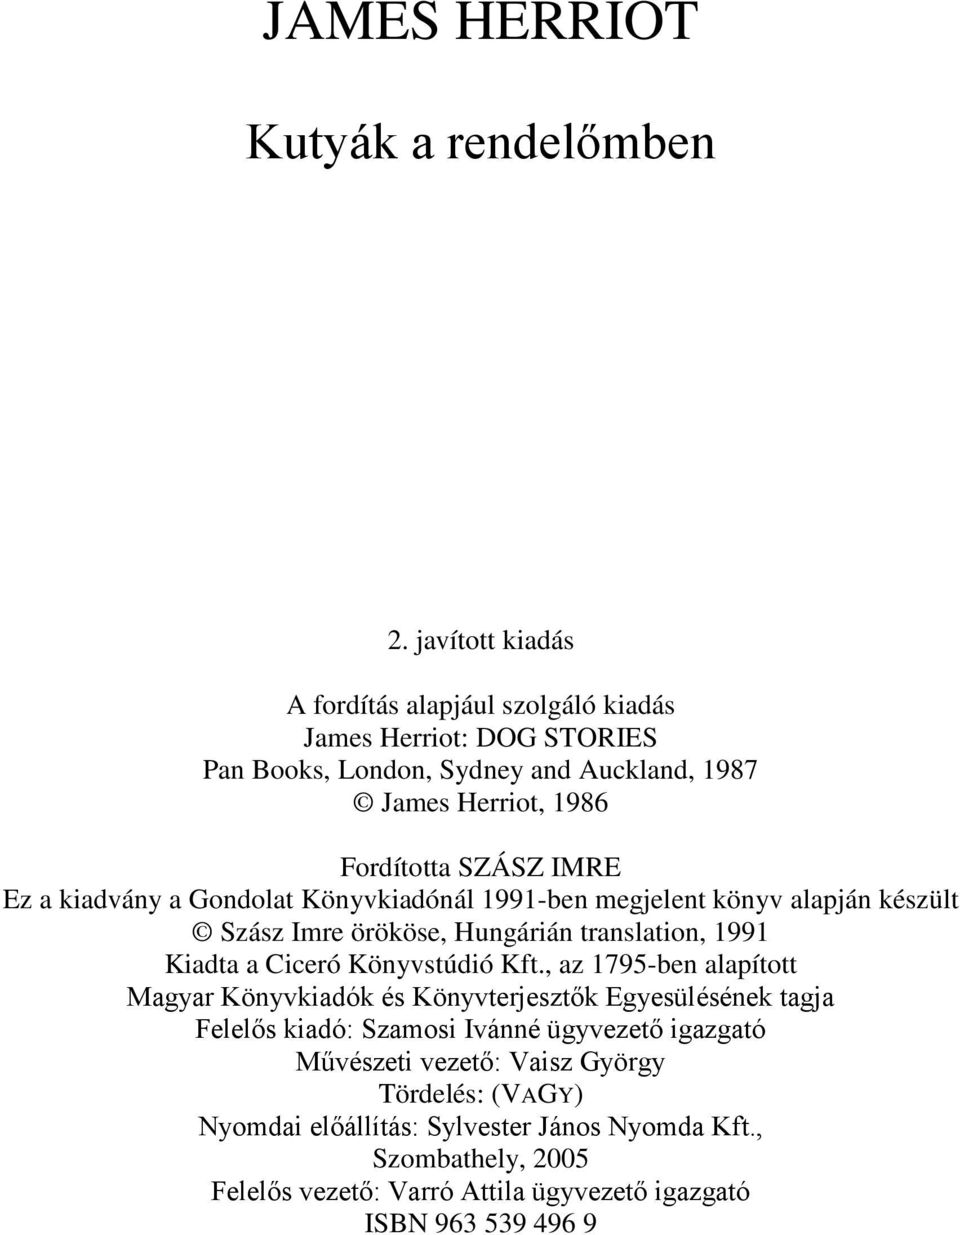 a kiadvány a Gondolat Könyvkiadónál 1991-ben megjelent könyv alapján készült Szász Imre örököse, Hungárián translation, 1991 Kiadta a Ciceró Könyvstúdió Kft.